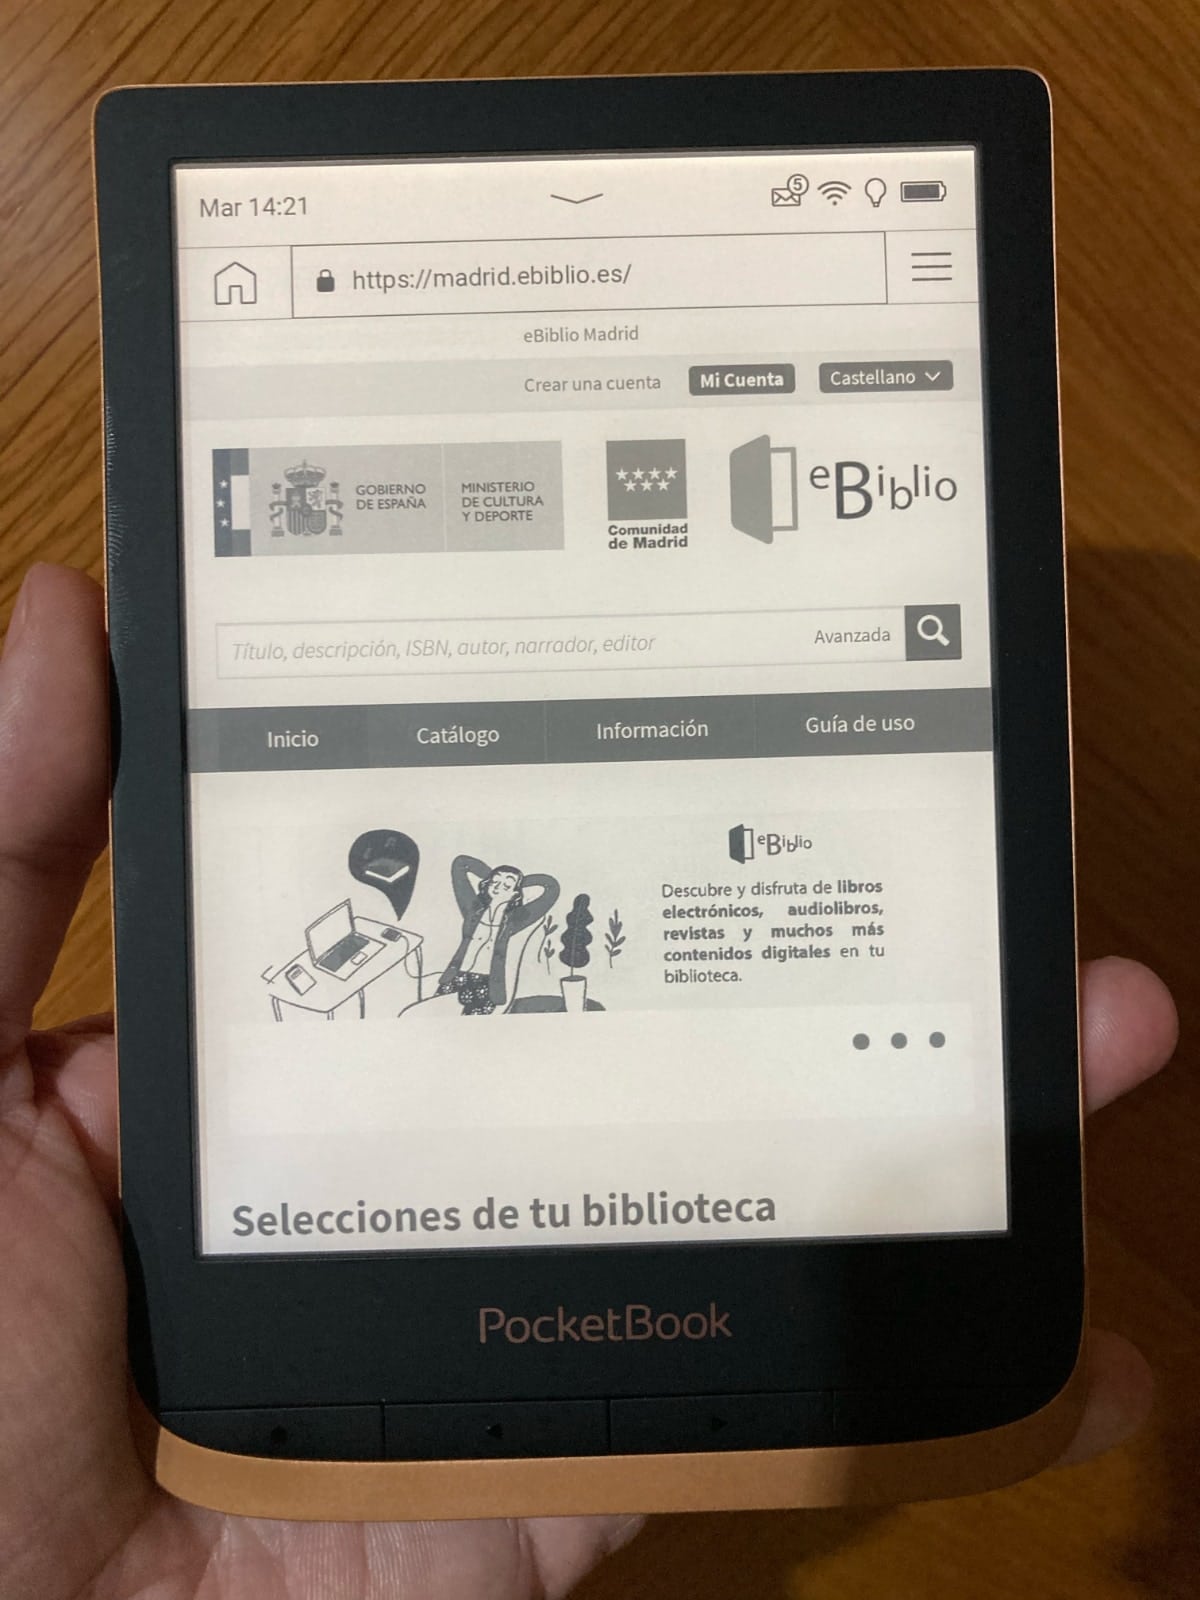 Accedemos a eBiblio desde el navegador del PocketBook: recuerda, tienes que tener carnet de bibliotecas. 